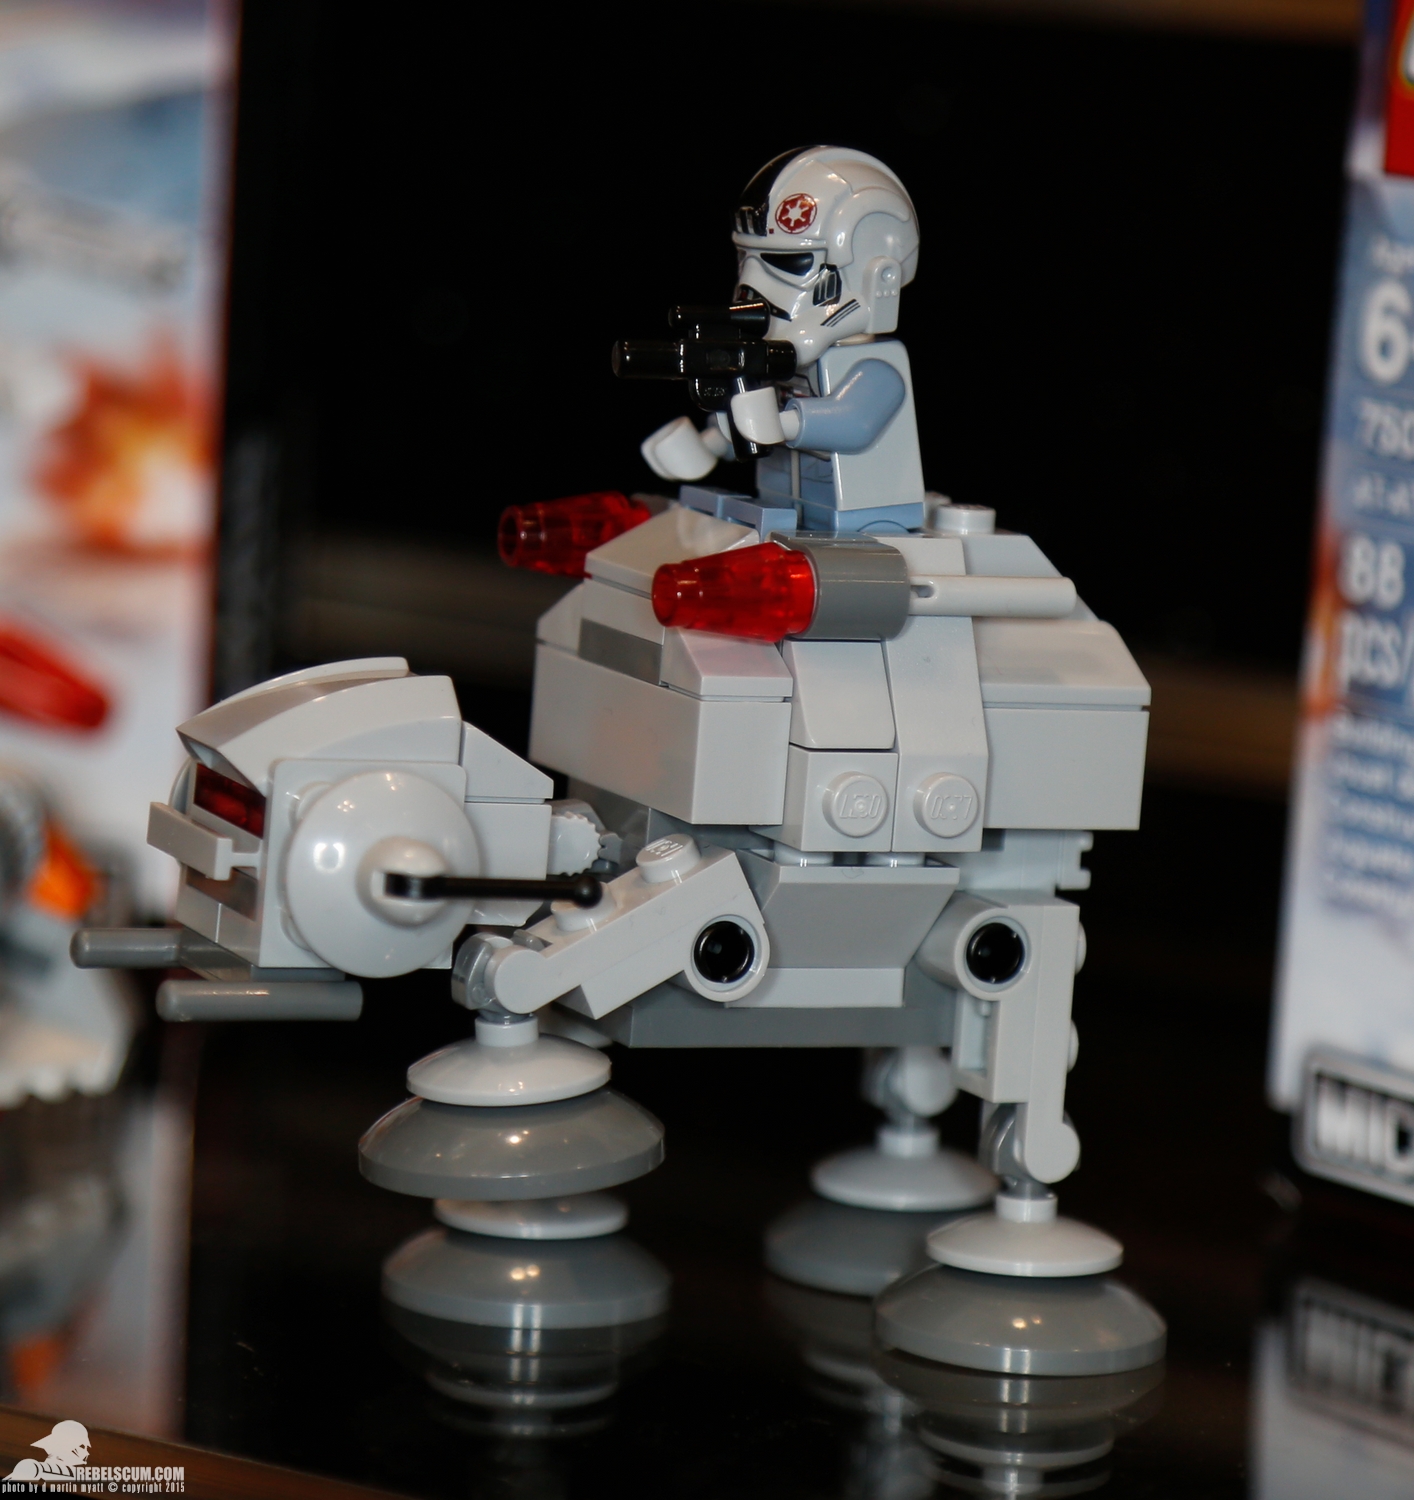 2015-International-Toy-Fair-Star-Wars-Lego-016.jpg